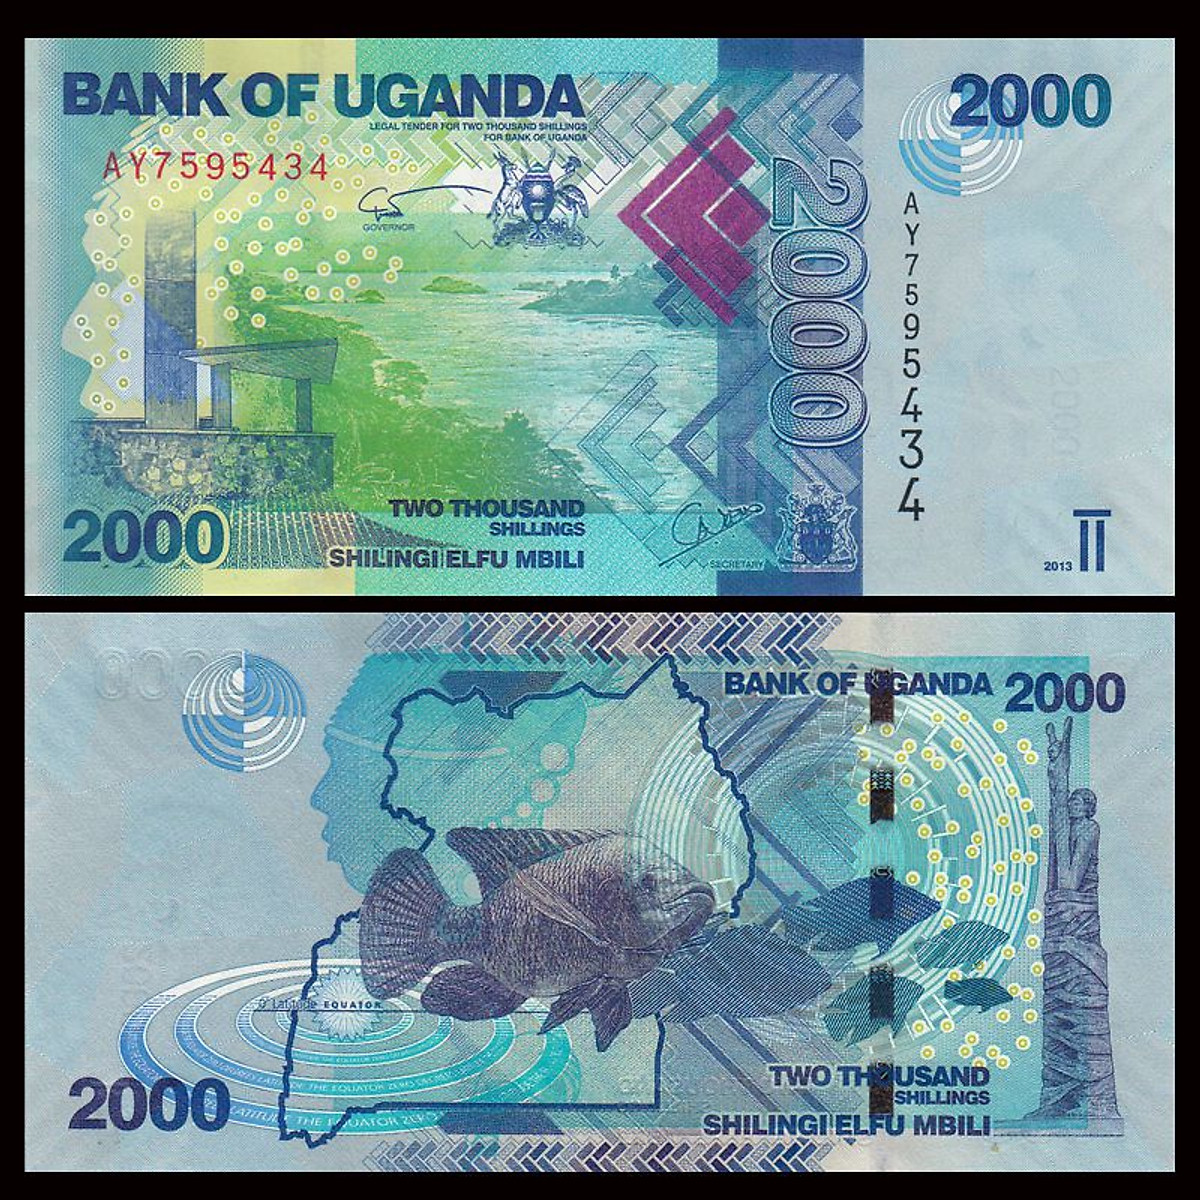 Tiền Uganda mệnh giá 2000 Shillingi thủy sản - Tiền mới keng 100% - Tặng túi nilon bảo quản